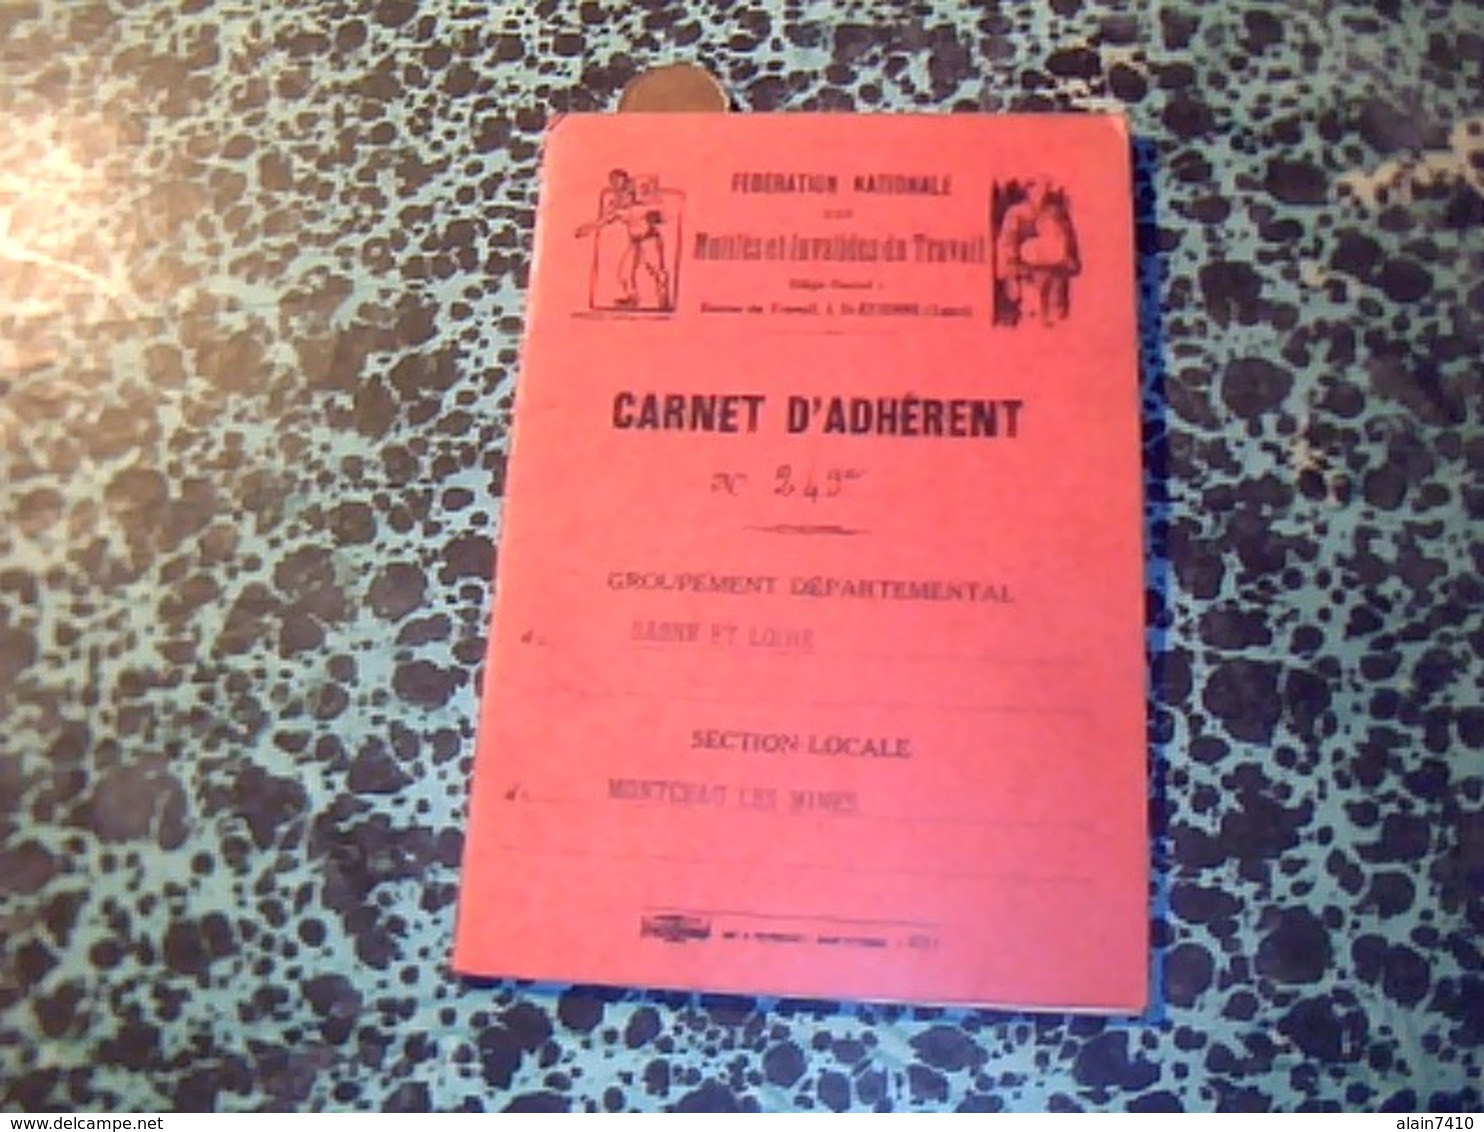 Carnet D Adherent Federation Nationale Mutiles Et Invalides Du Travail Montceau Les Mines 1941? - Cartes De Membre